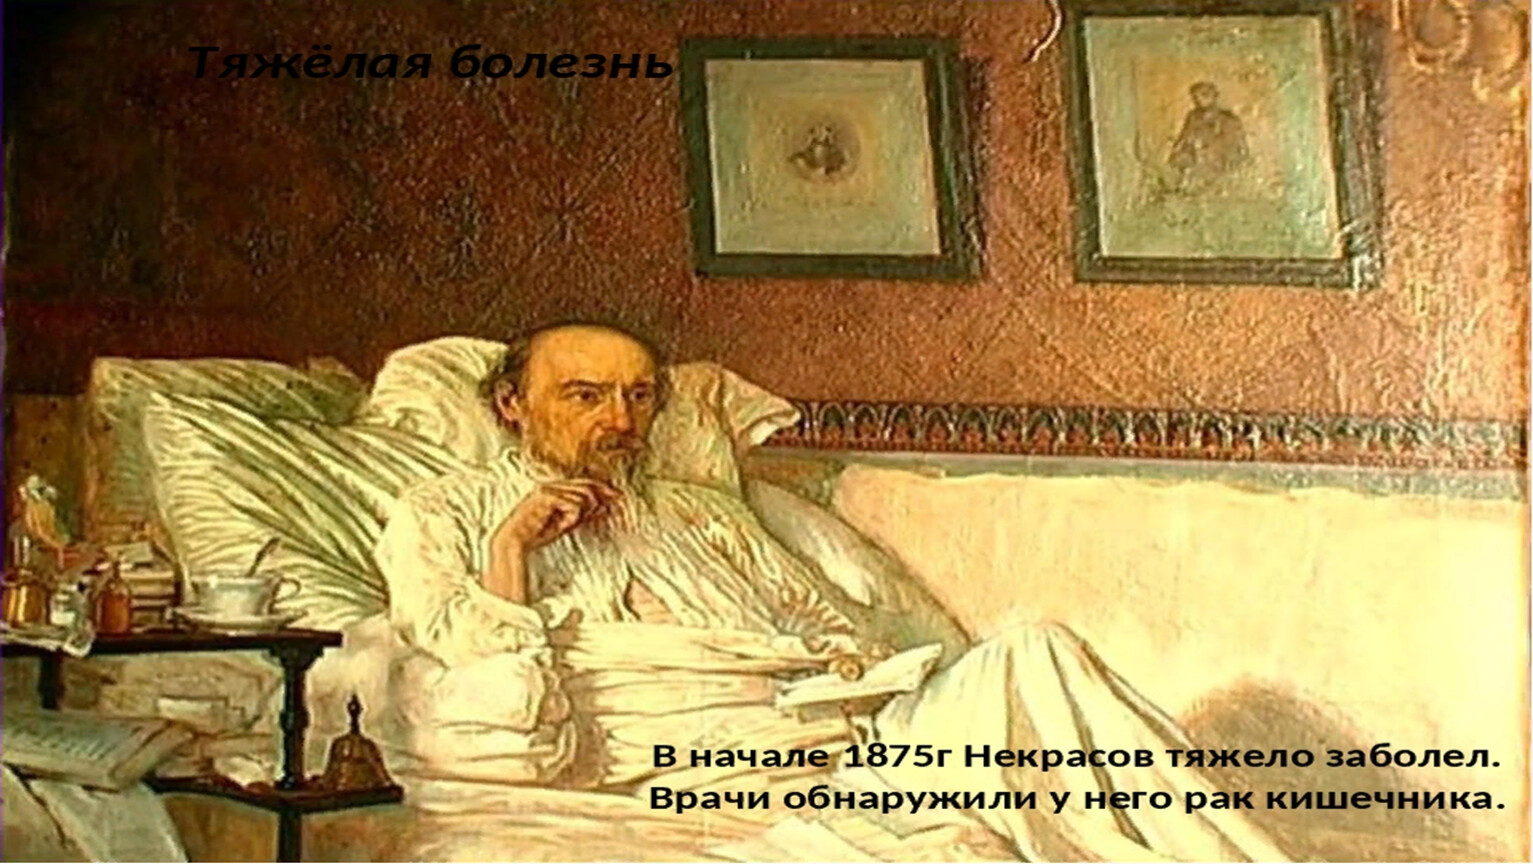 Портрет Некрасова в Третьяковской галерее